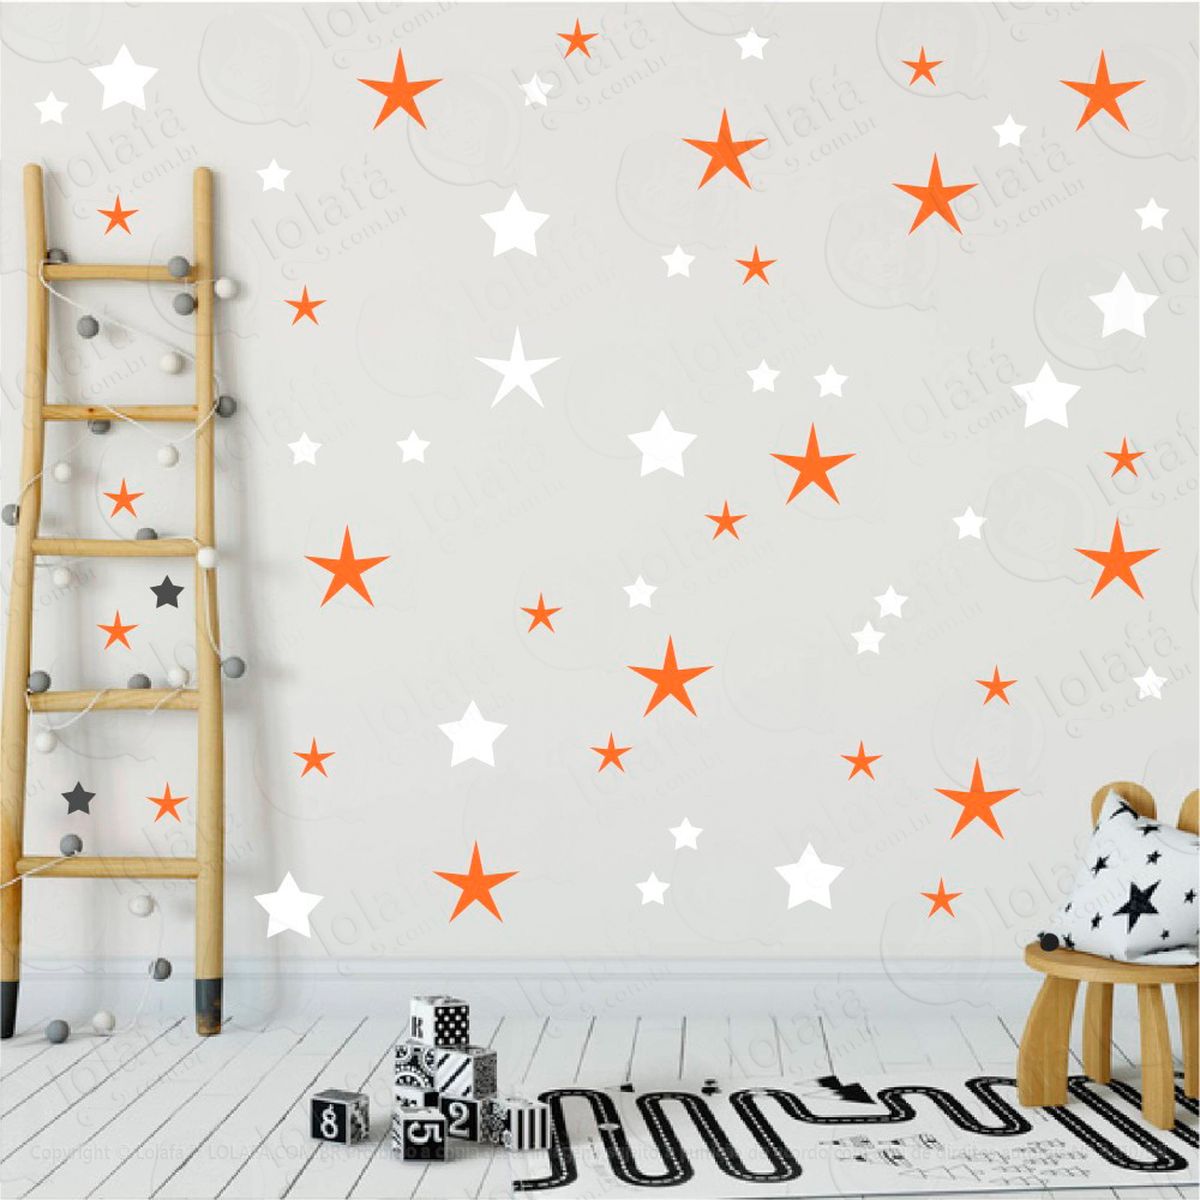 adesivos estrelas 90 peças adesivos para quarto de bebê infantil - mod:23